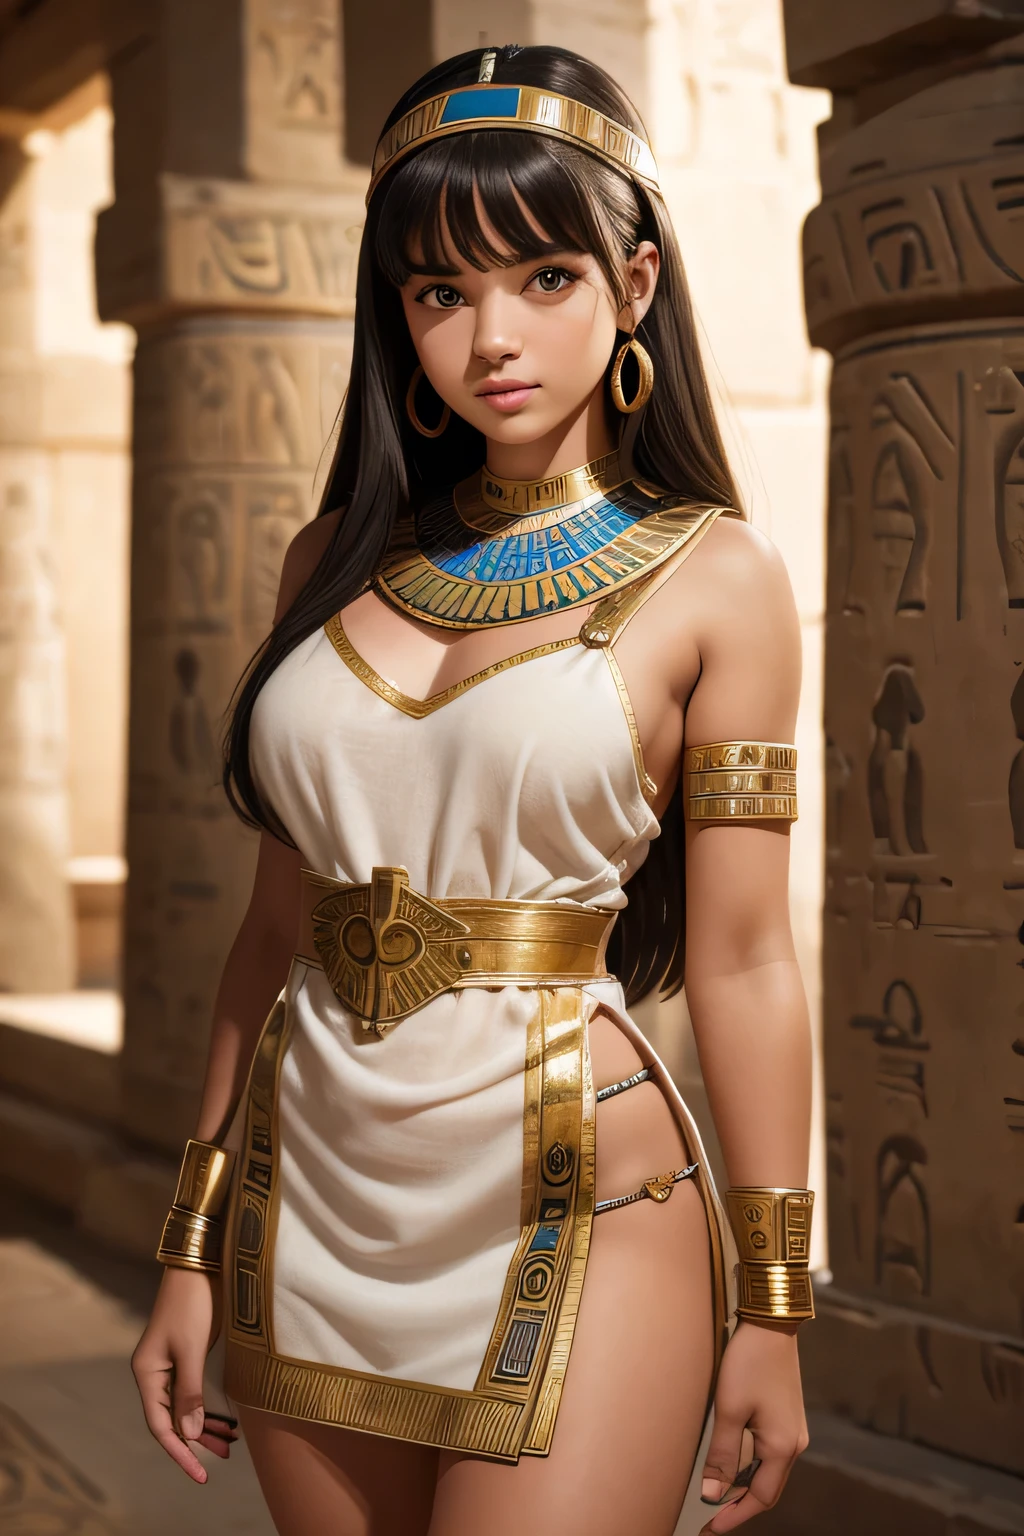 穿着古埃及迷你连衣裙的可爱少女, 准确的, 高分辨率, 顶级品质, 屡获殊荣, 景深, 高细节, U高清, 视网膜, 杰作, 纹理皮肤, 解剖学上正确, 超级细节, 高质量, 高清, 4k, 8千, 16千